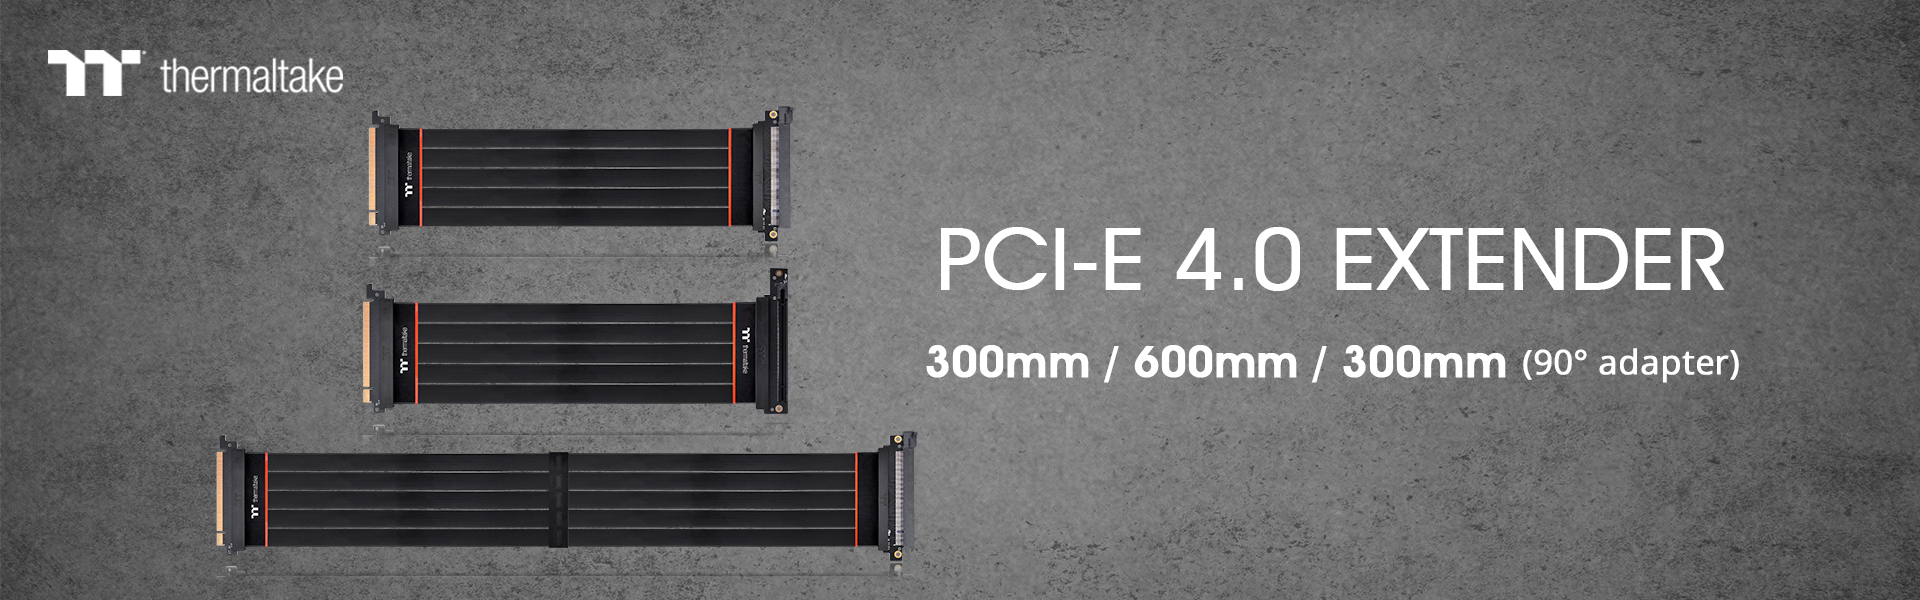 Thermaltake PCIE 4.0 Extender_2